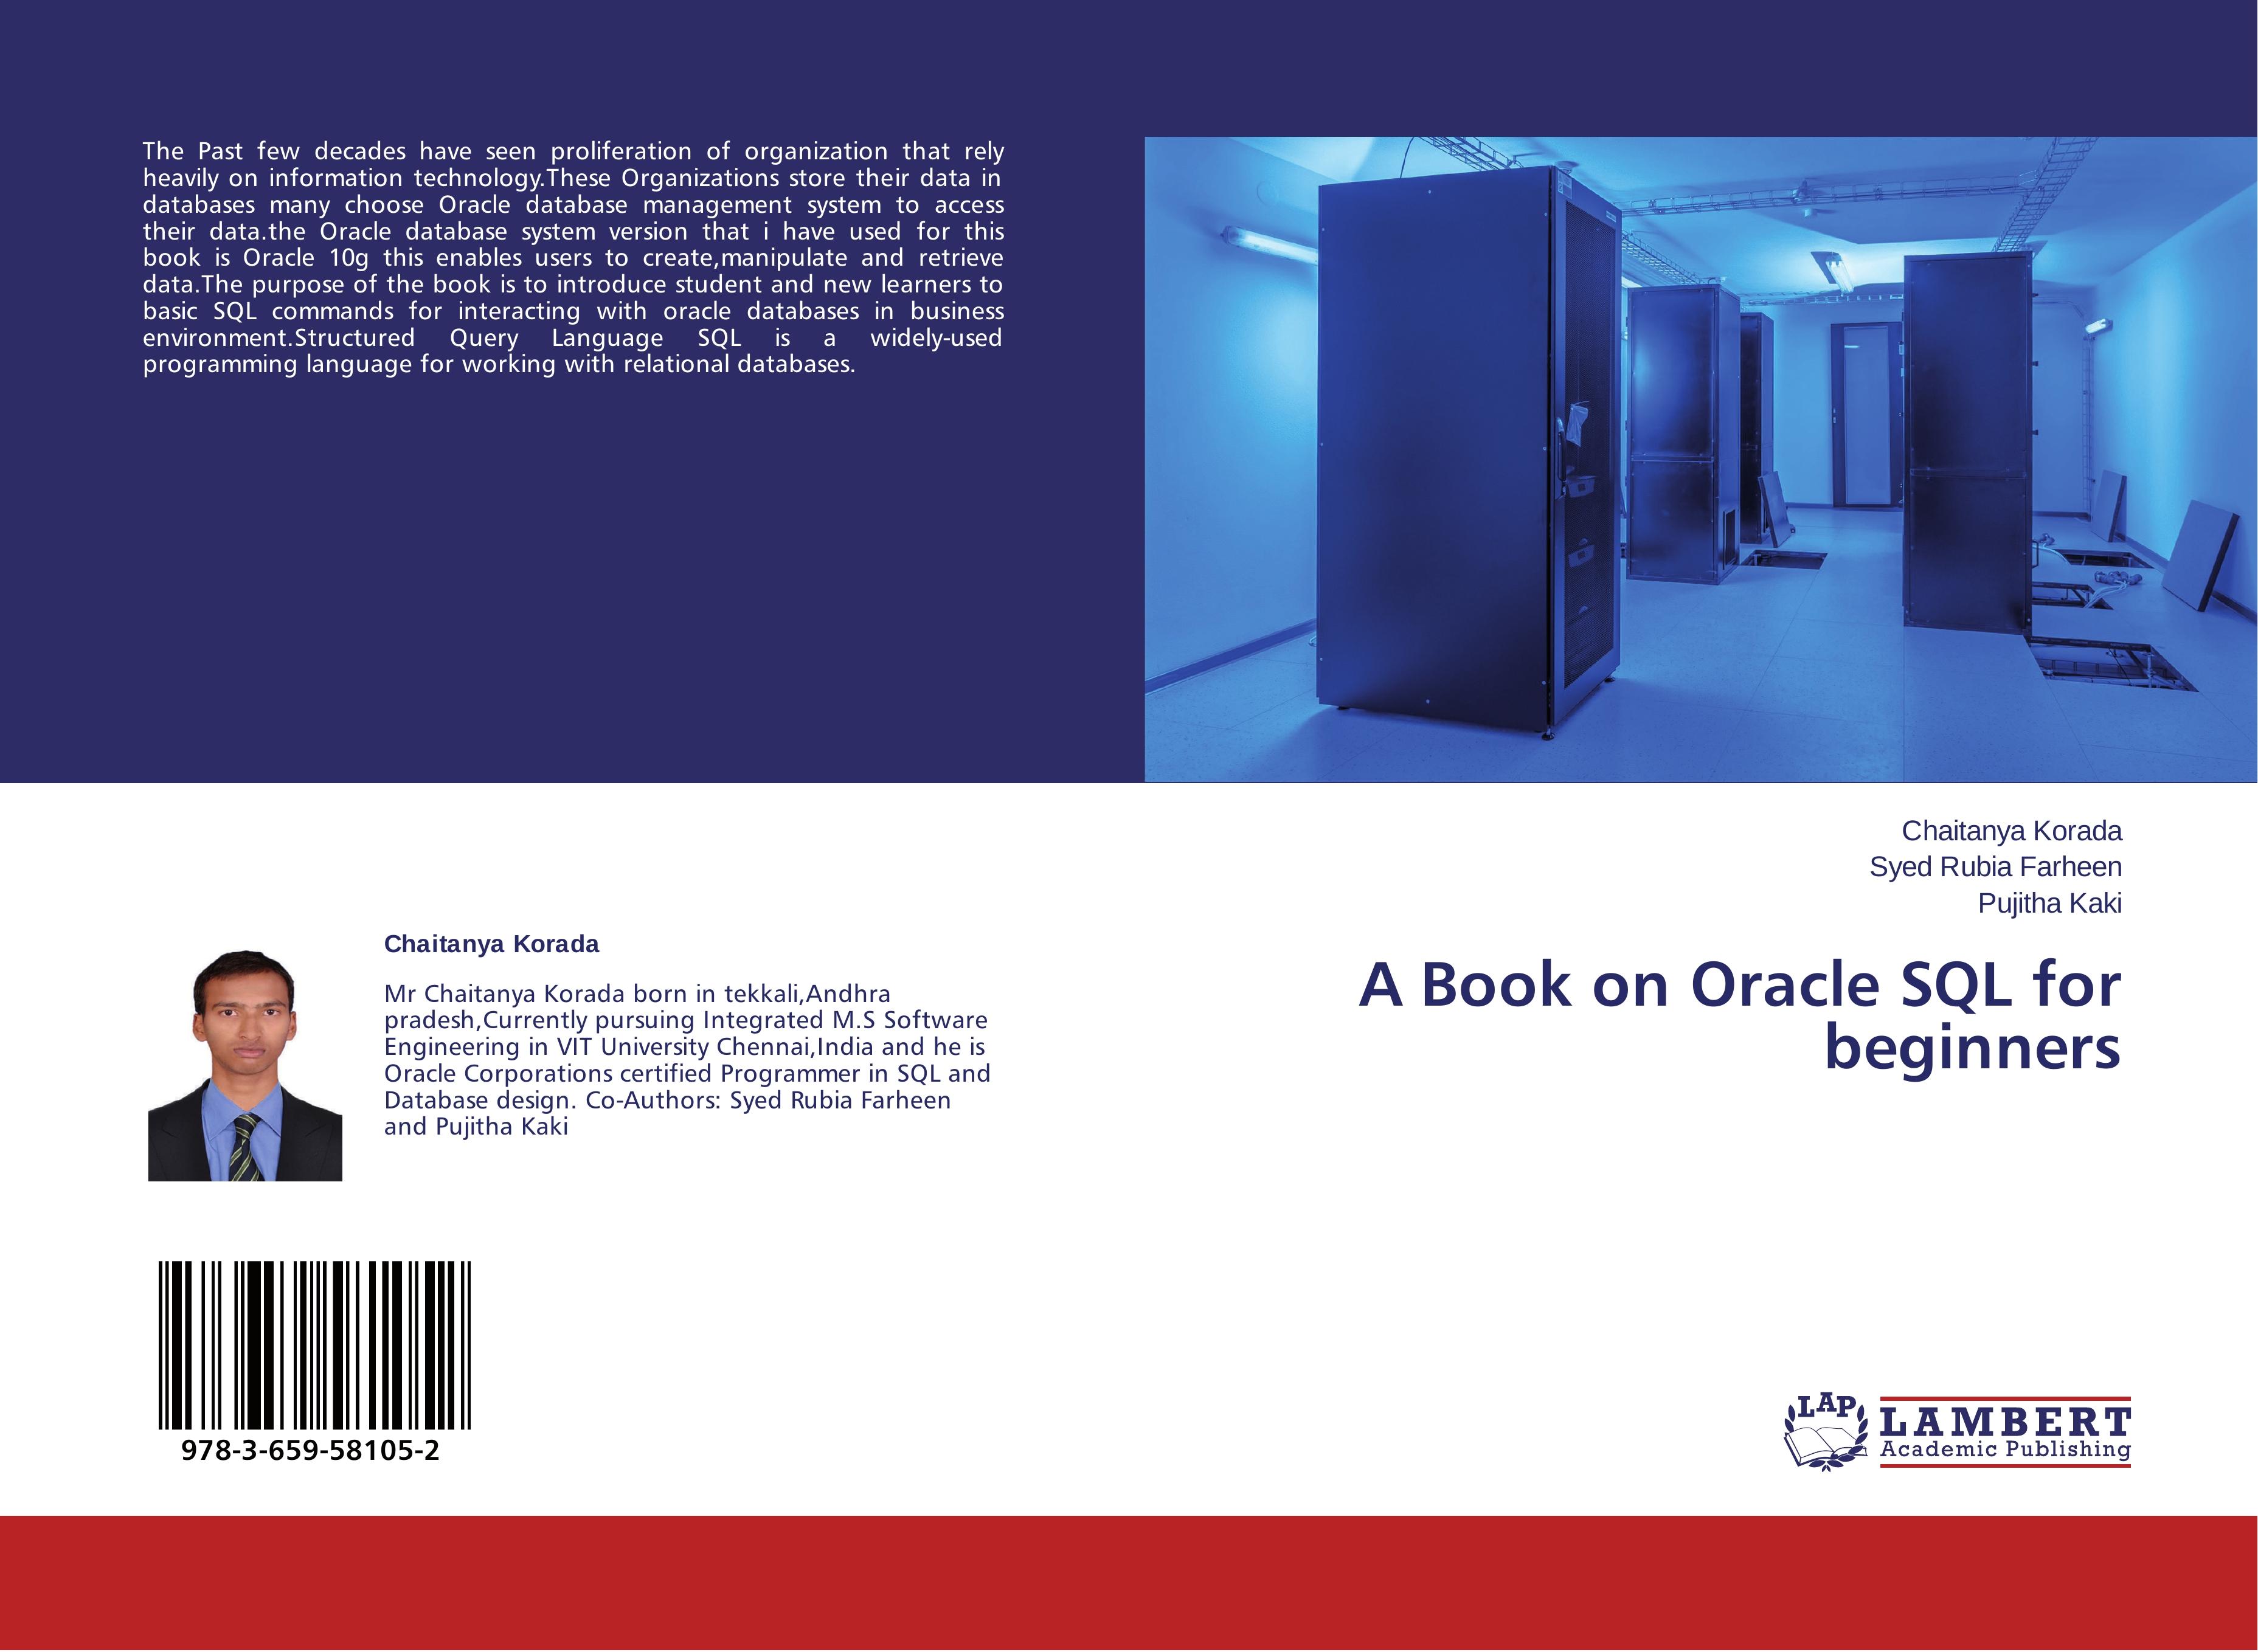 A Book on Oracle SQL for beginners - Chaitanya Korada Syed Rubia Farheen Pujitha Kaki